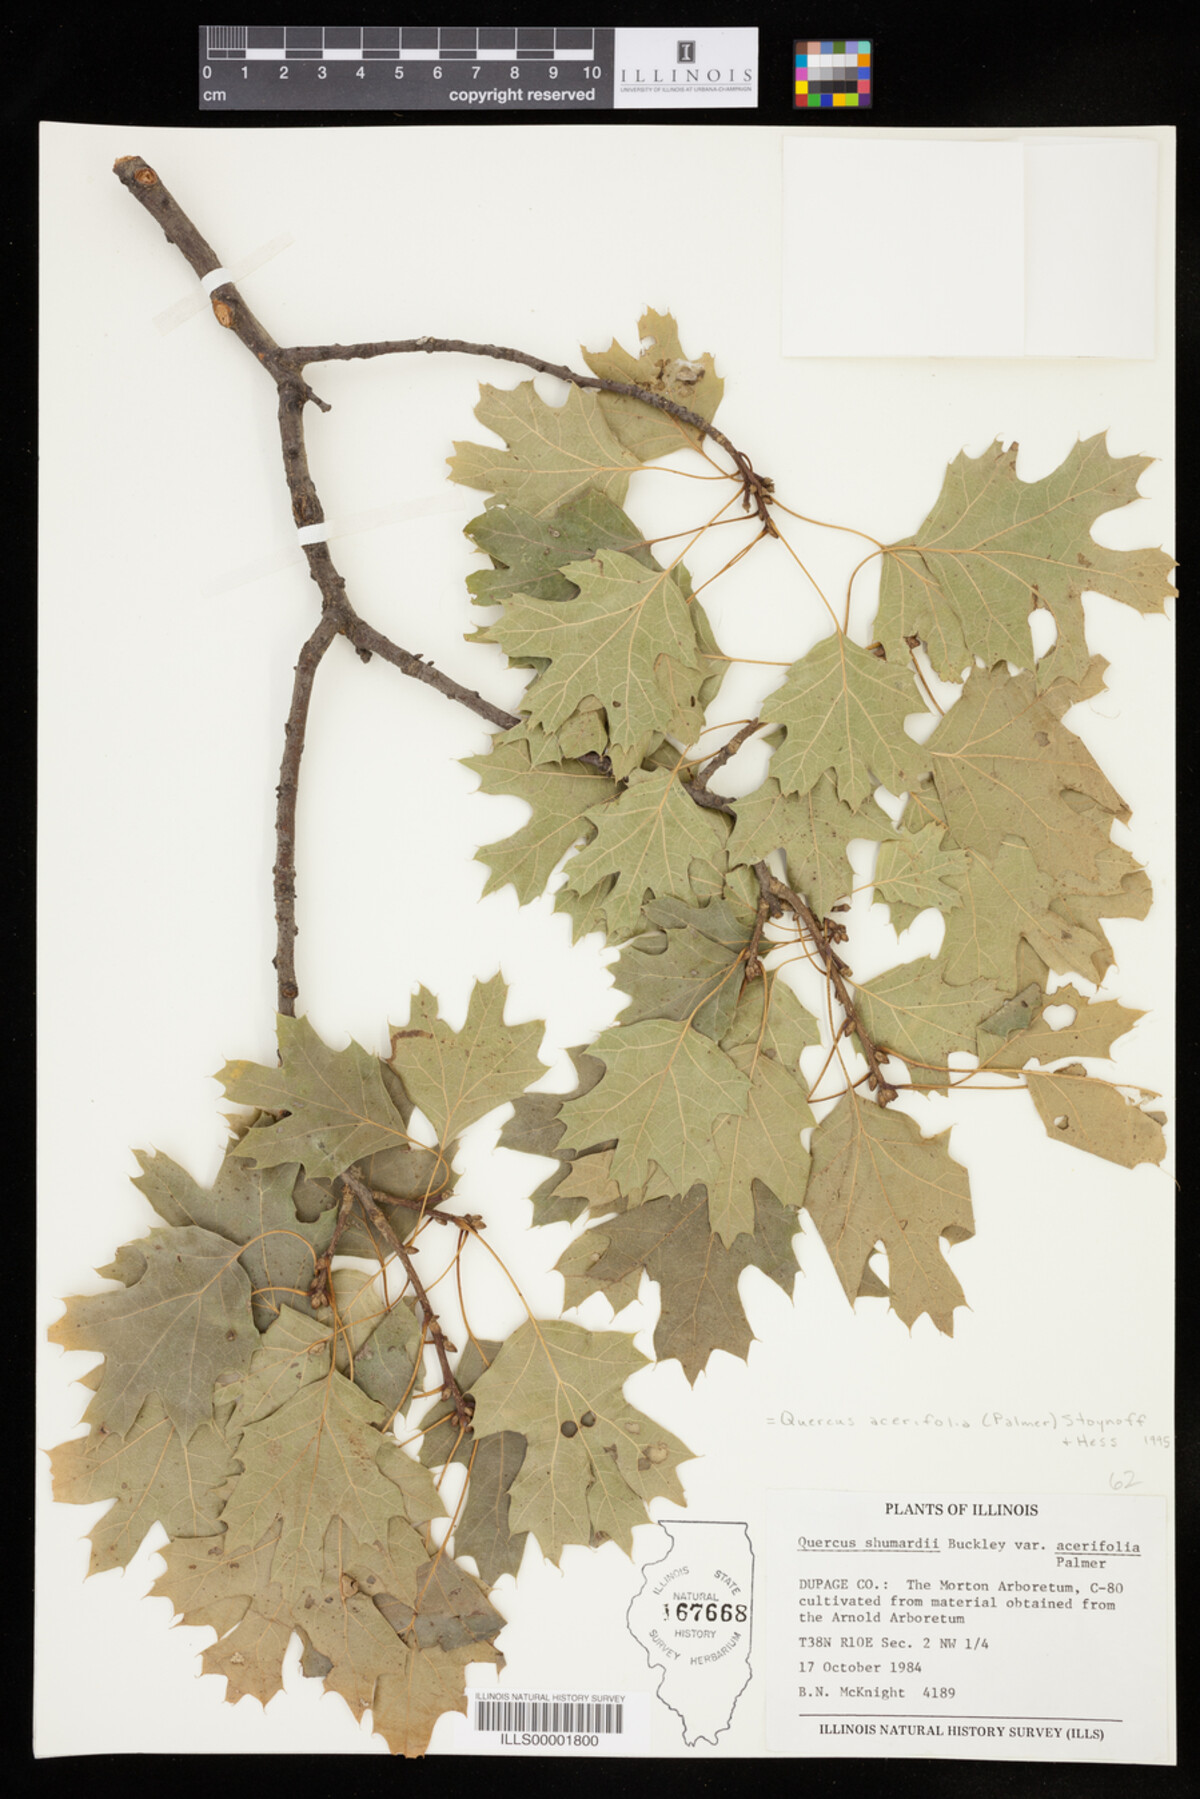 Quercus acerifolia image